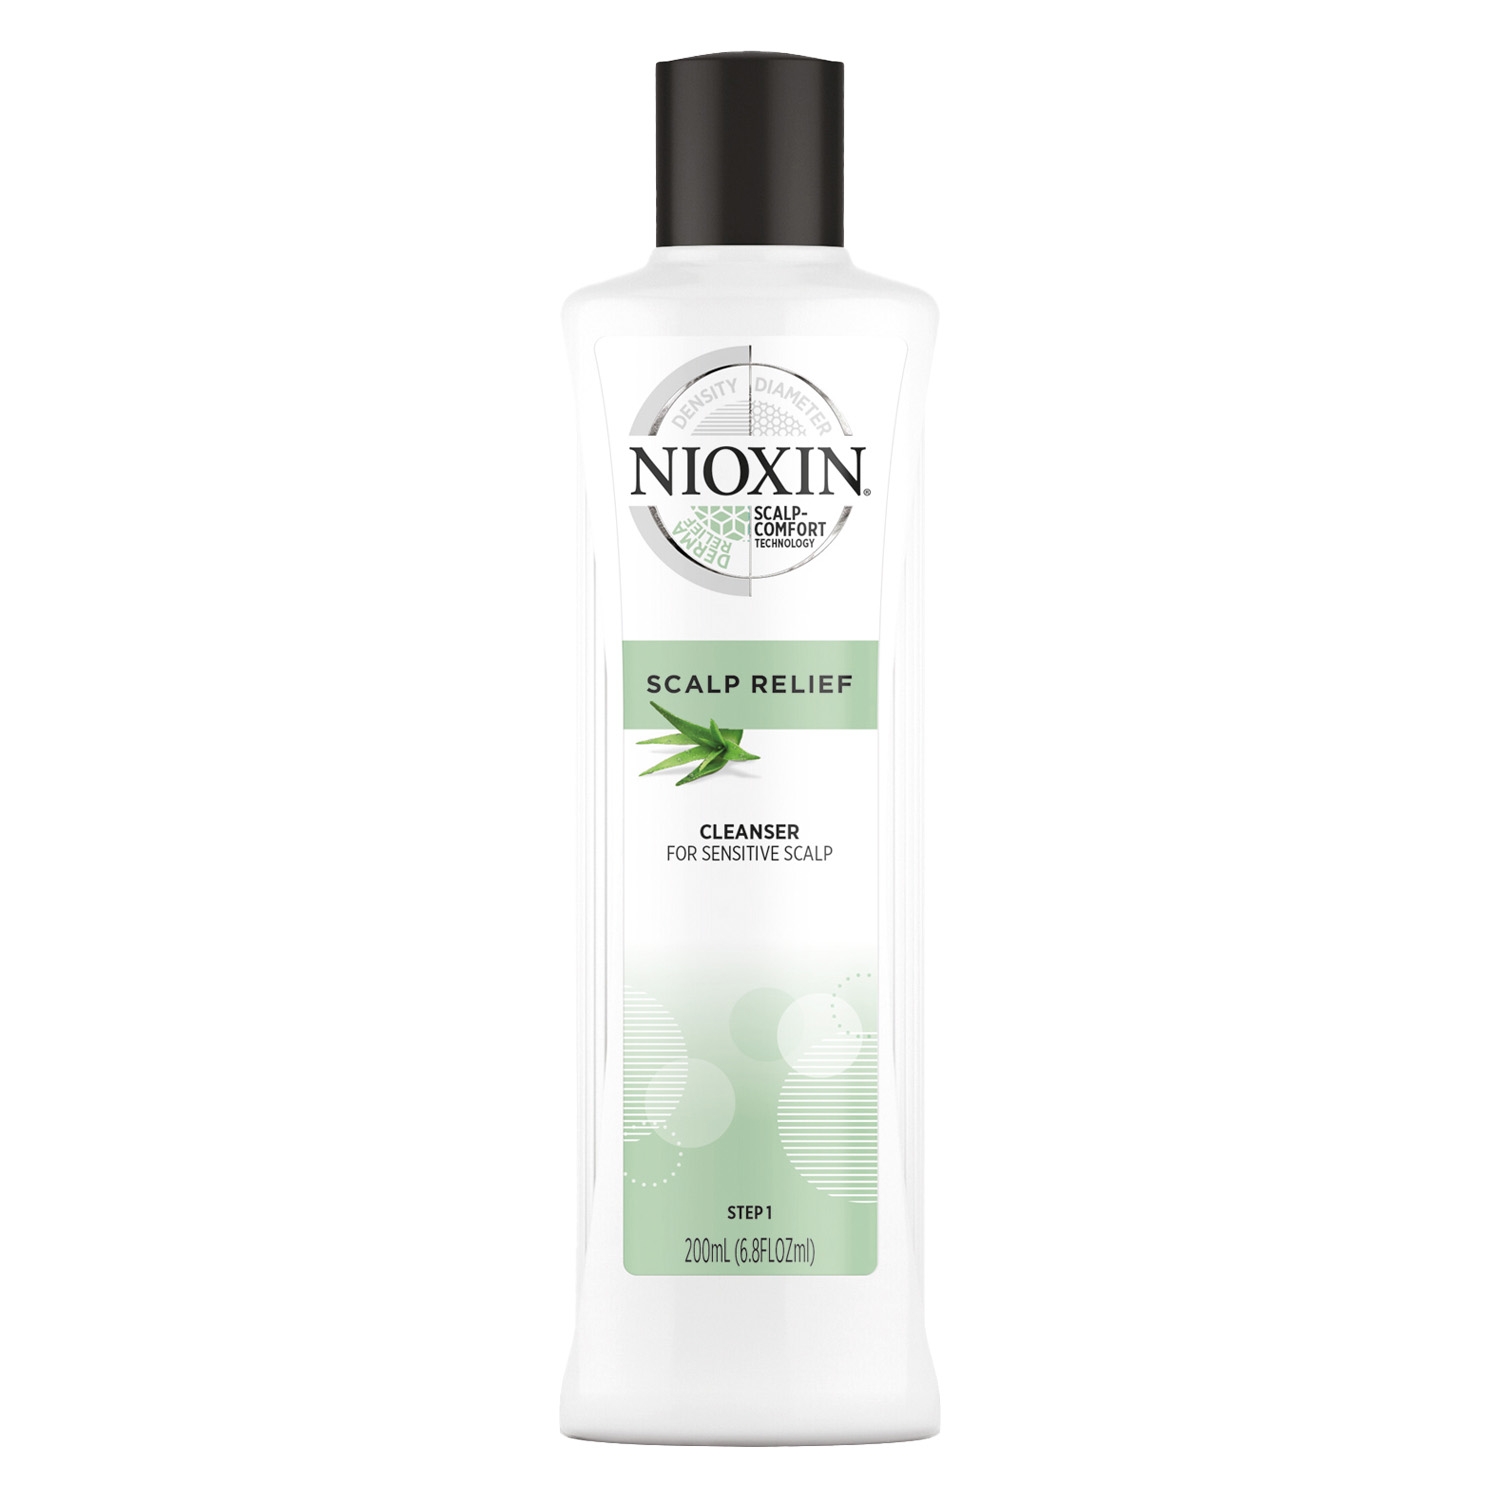 Produktbild von Nioxin - Scalp Relief Cleanser